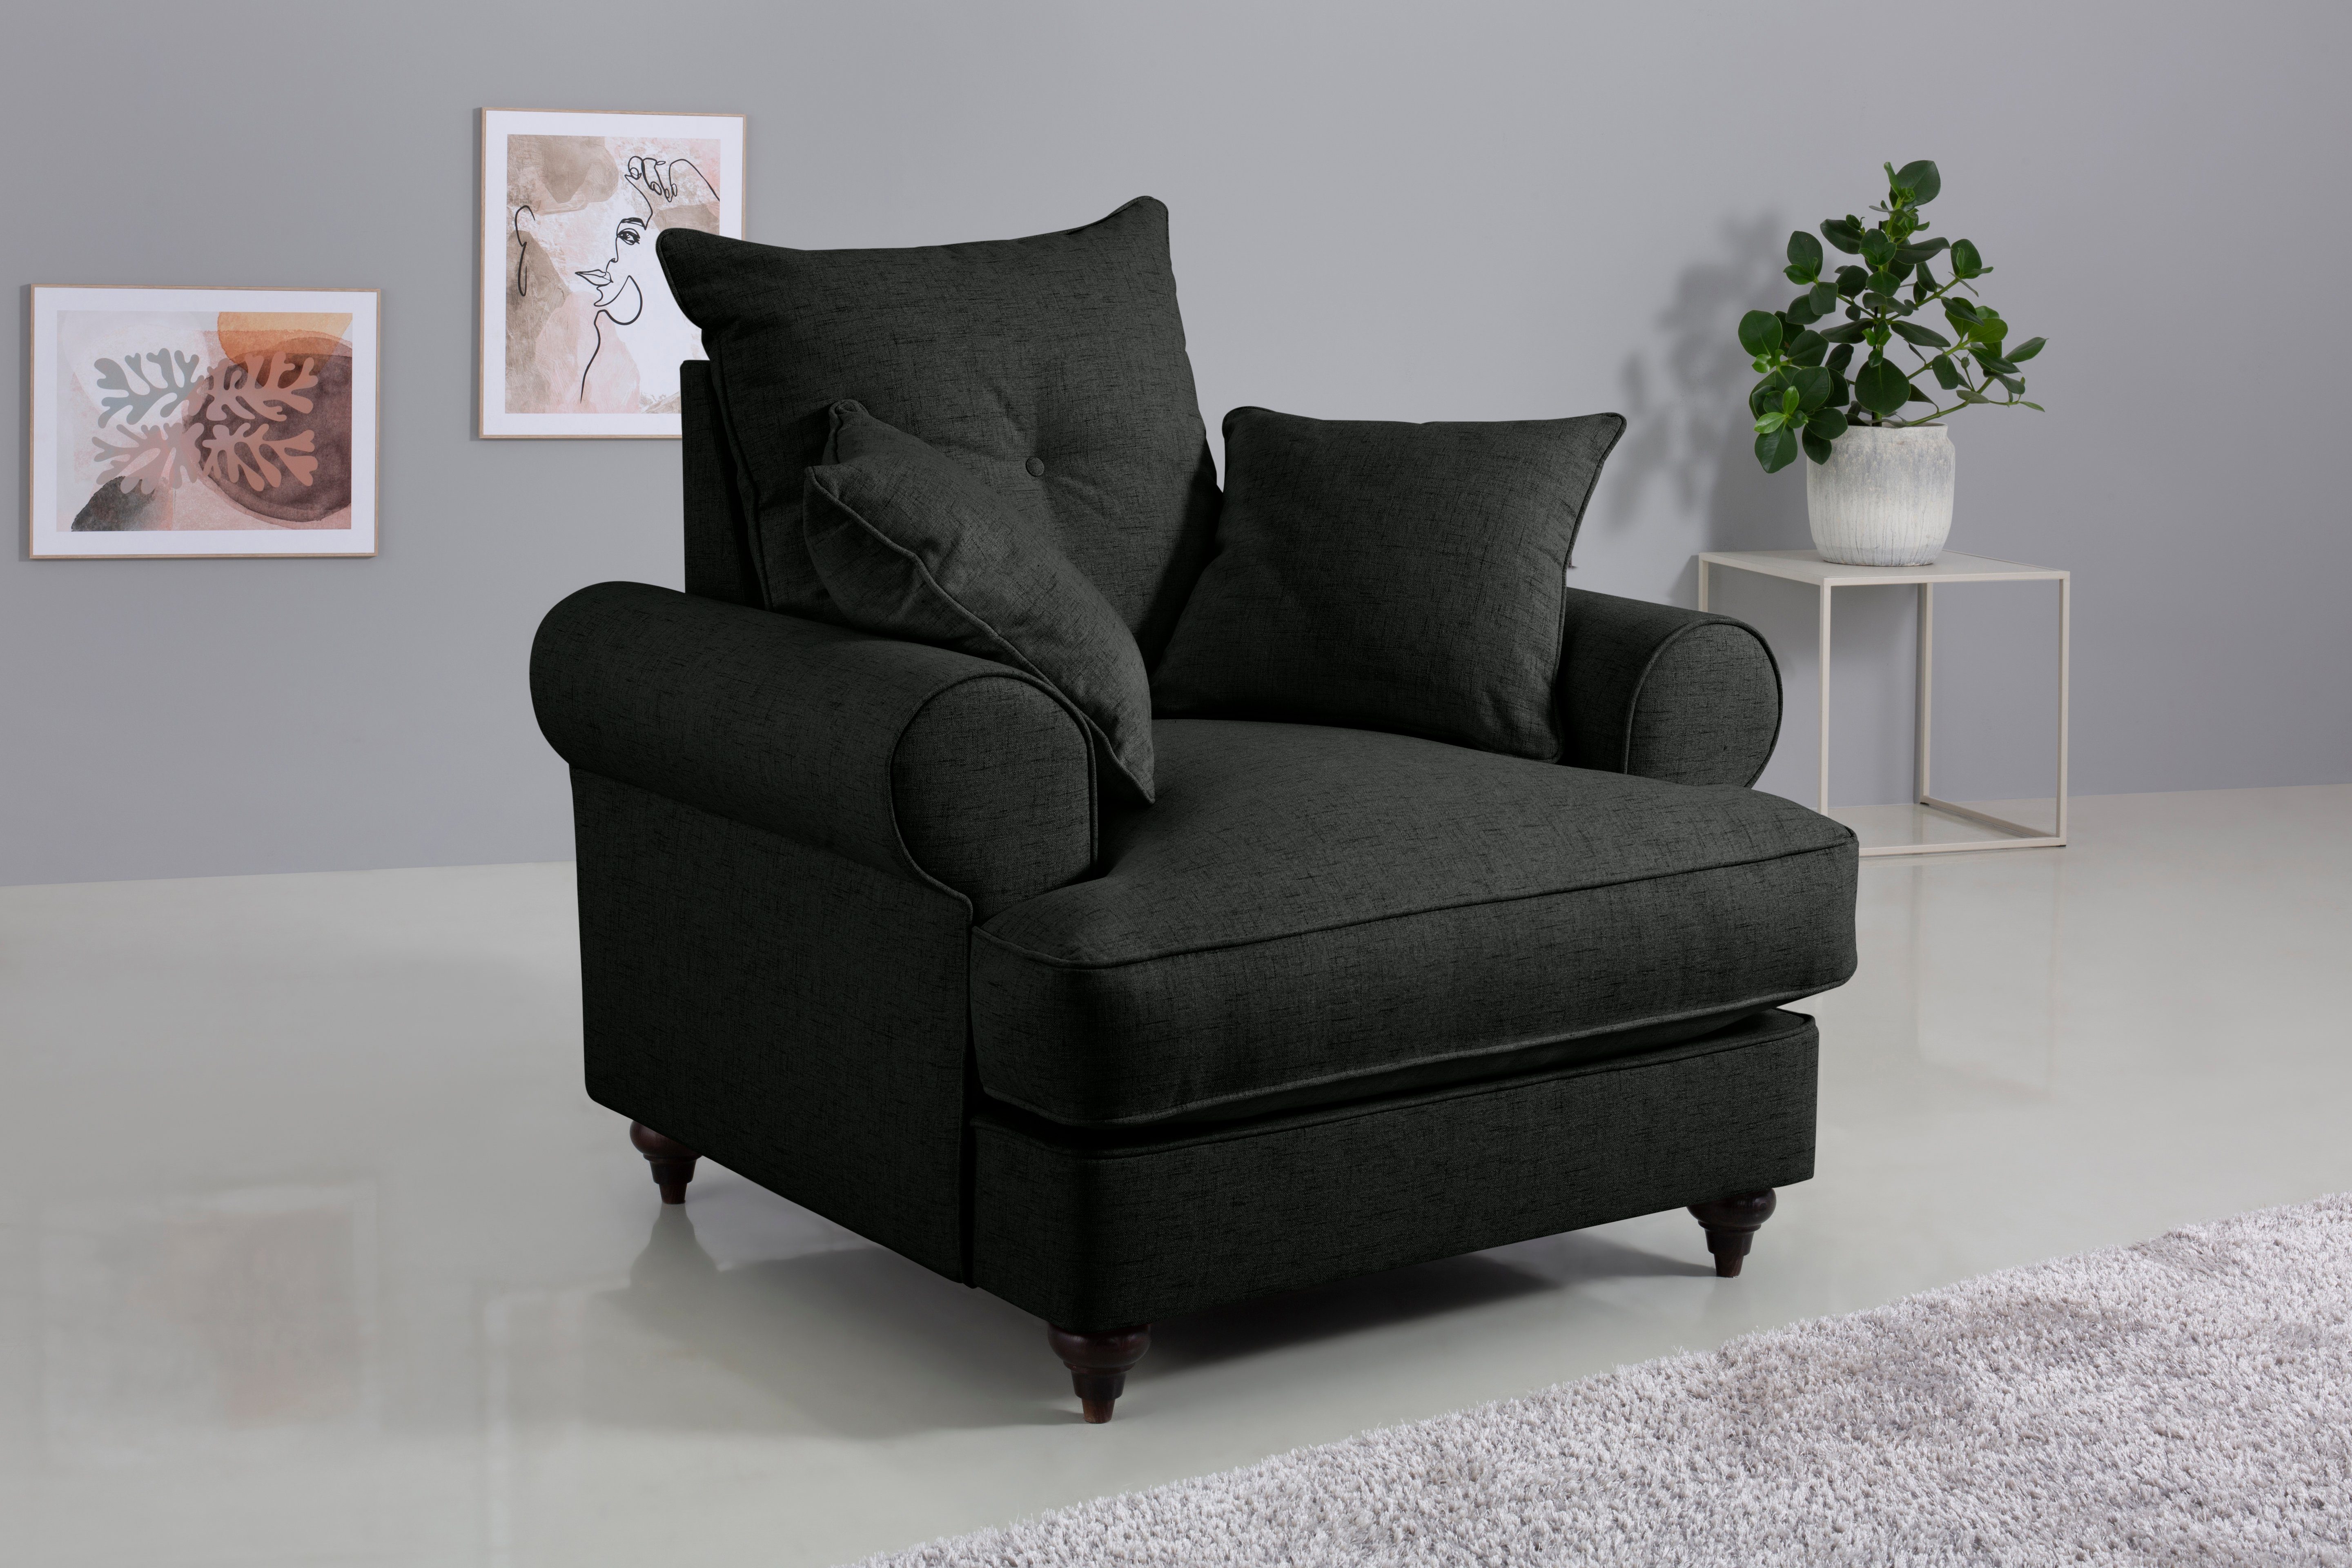 Home affaire Sessel hochwertigem erhältlich mit in Kaltschaum, anthrazite verschiedenen Bloomer, Farben